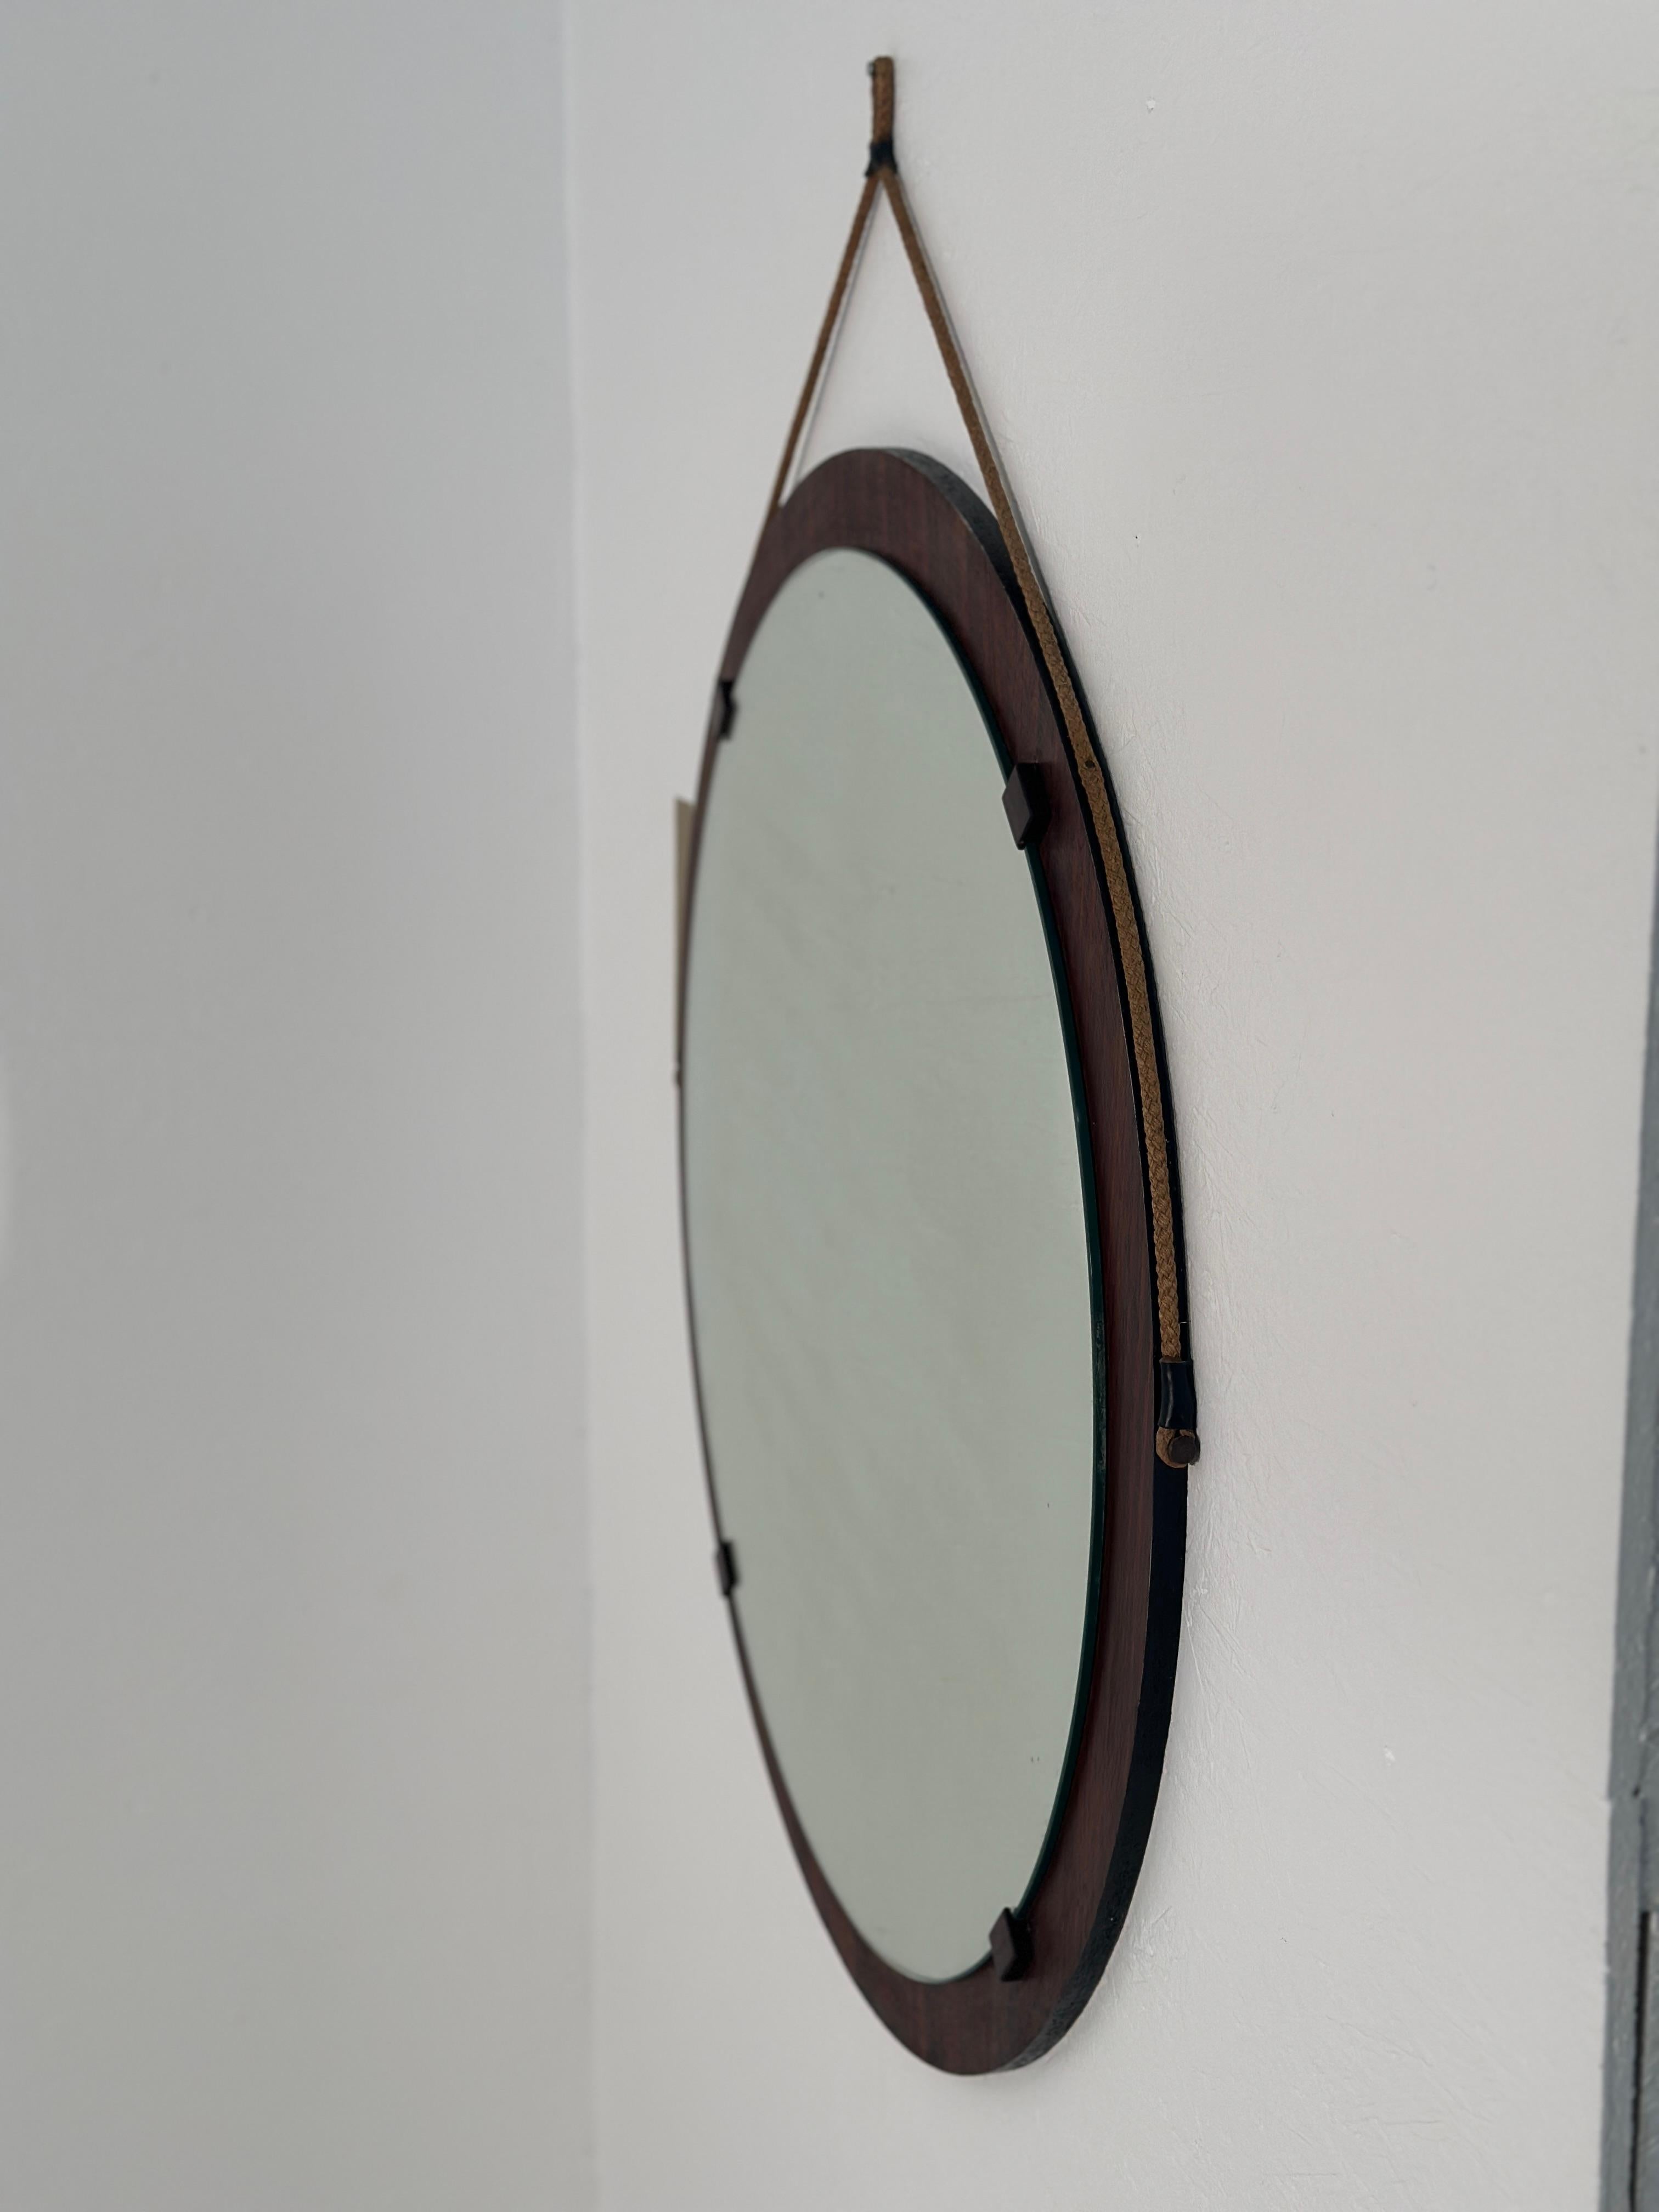 Le miroir mural rond en bois italien des années 1980 est une pièce charmante qui présente un design circulaire avec un cadre en bois, incarnant l'élégance rustique de l'artisanat italien de l'époque.

